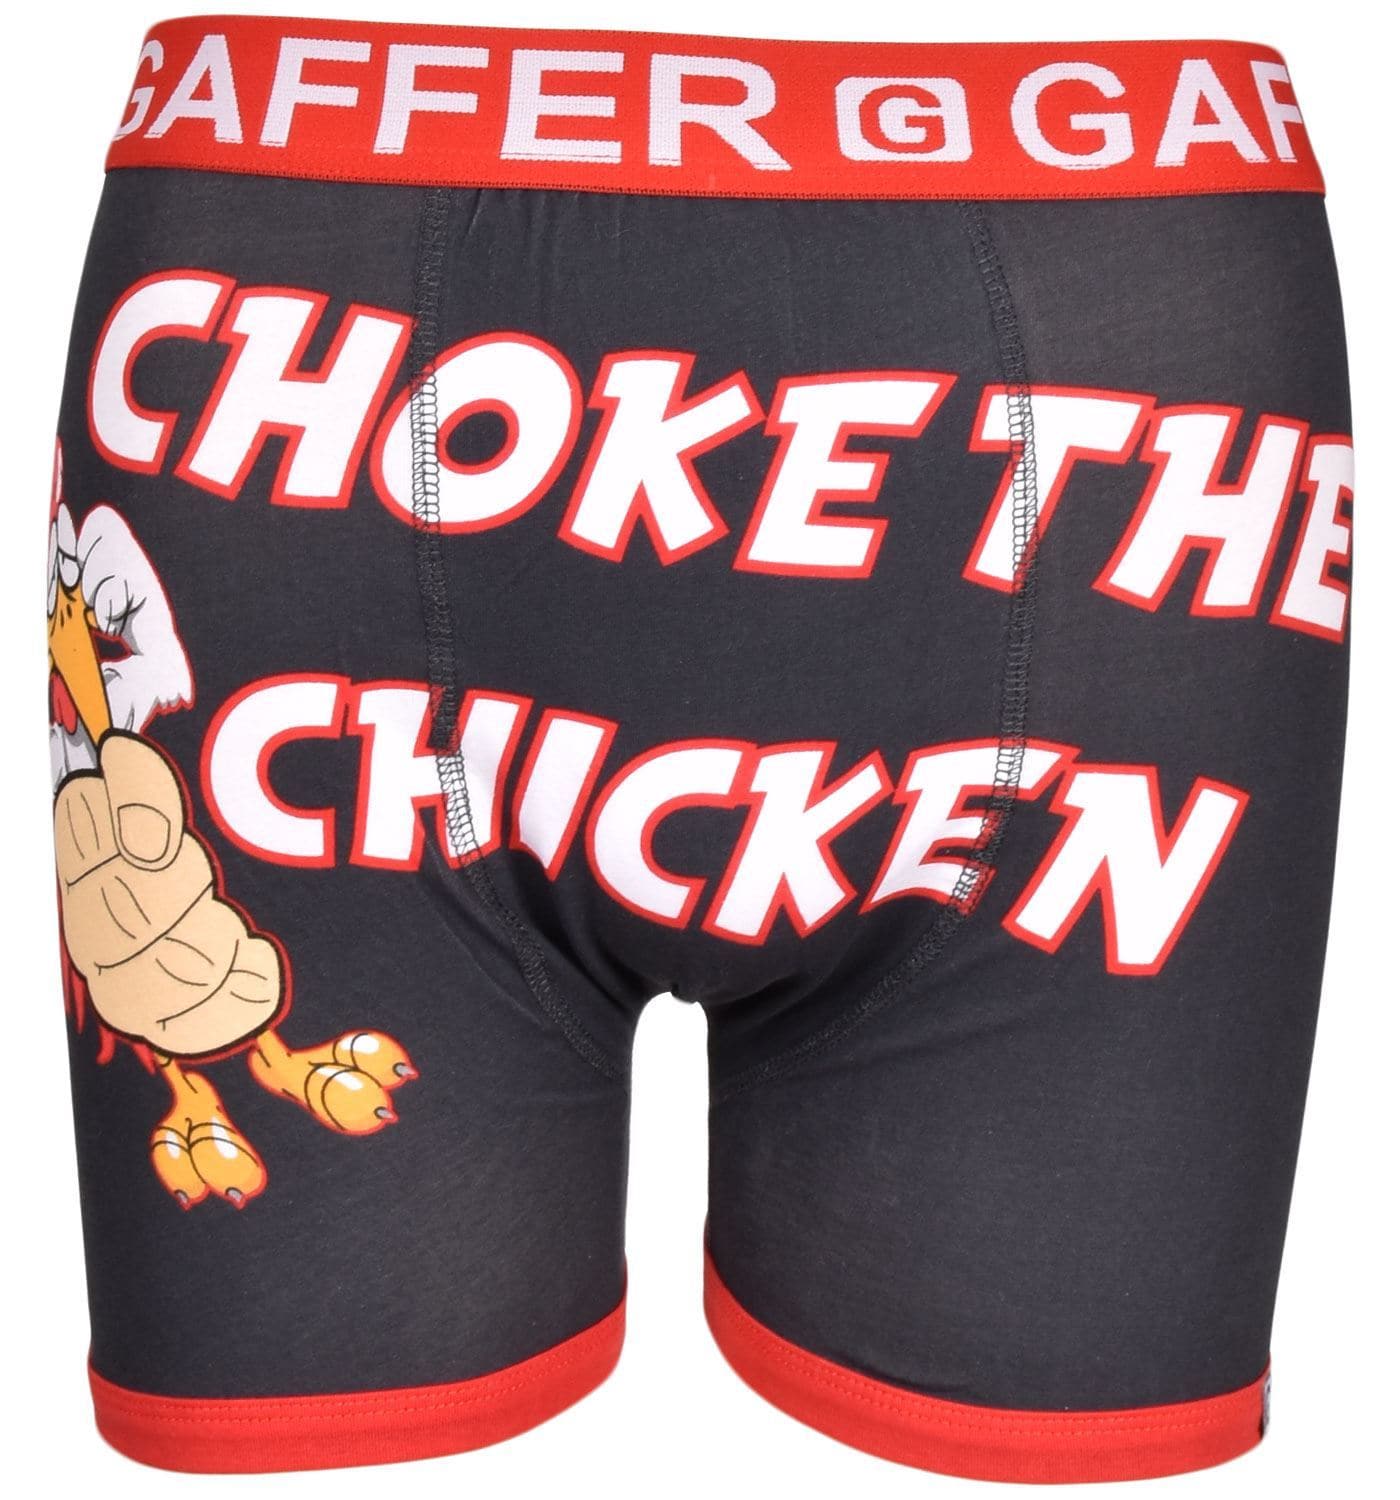 Gaffer Boxers Chicken – 5poundstuff